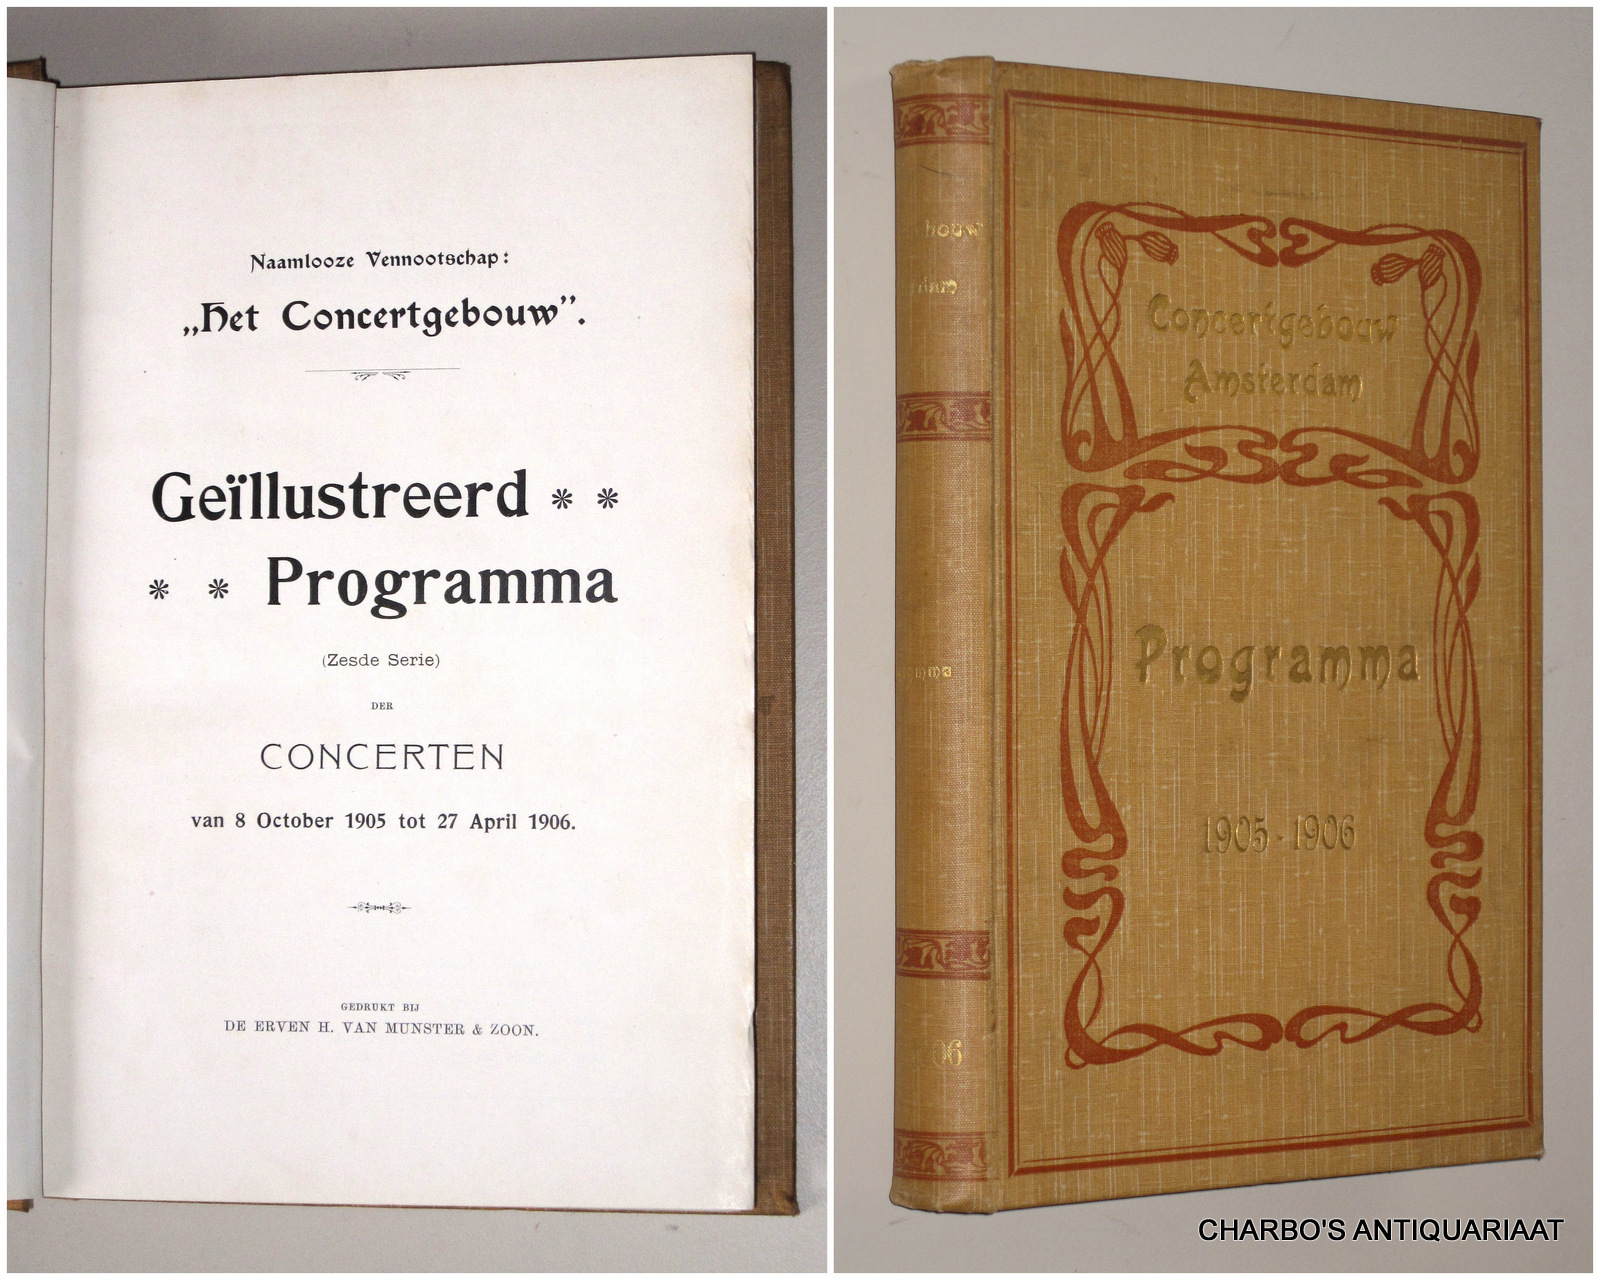 CONCERTGEBOUW, NAAMLOOZE VENNOOTSCHAP HET, -  Gellustreerd programma (zesde serie) der concerten van 8 October 1905 tot 27 April 1906.